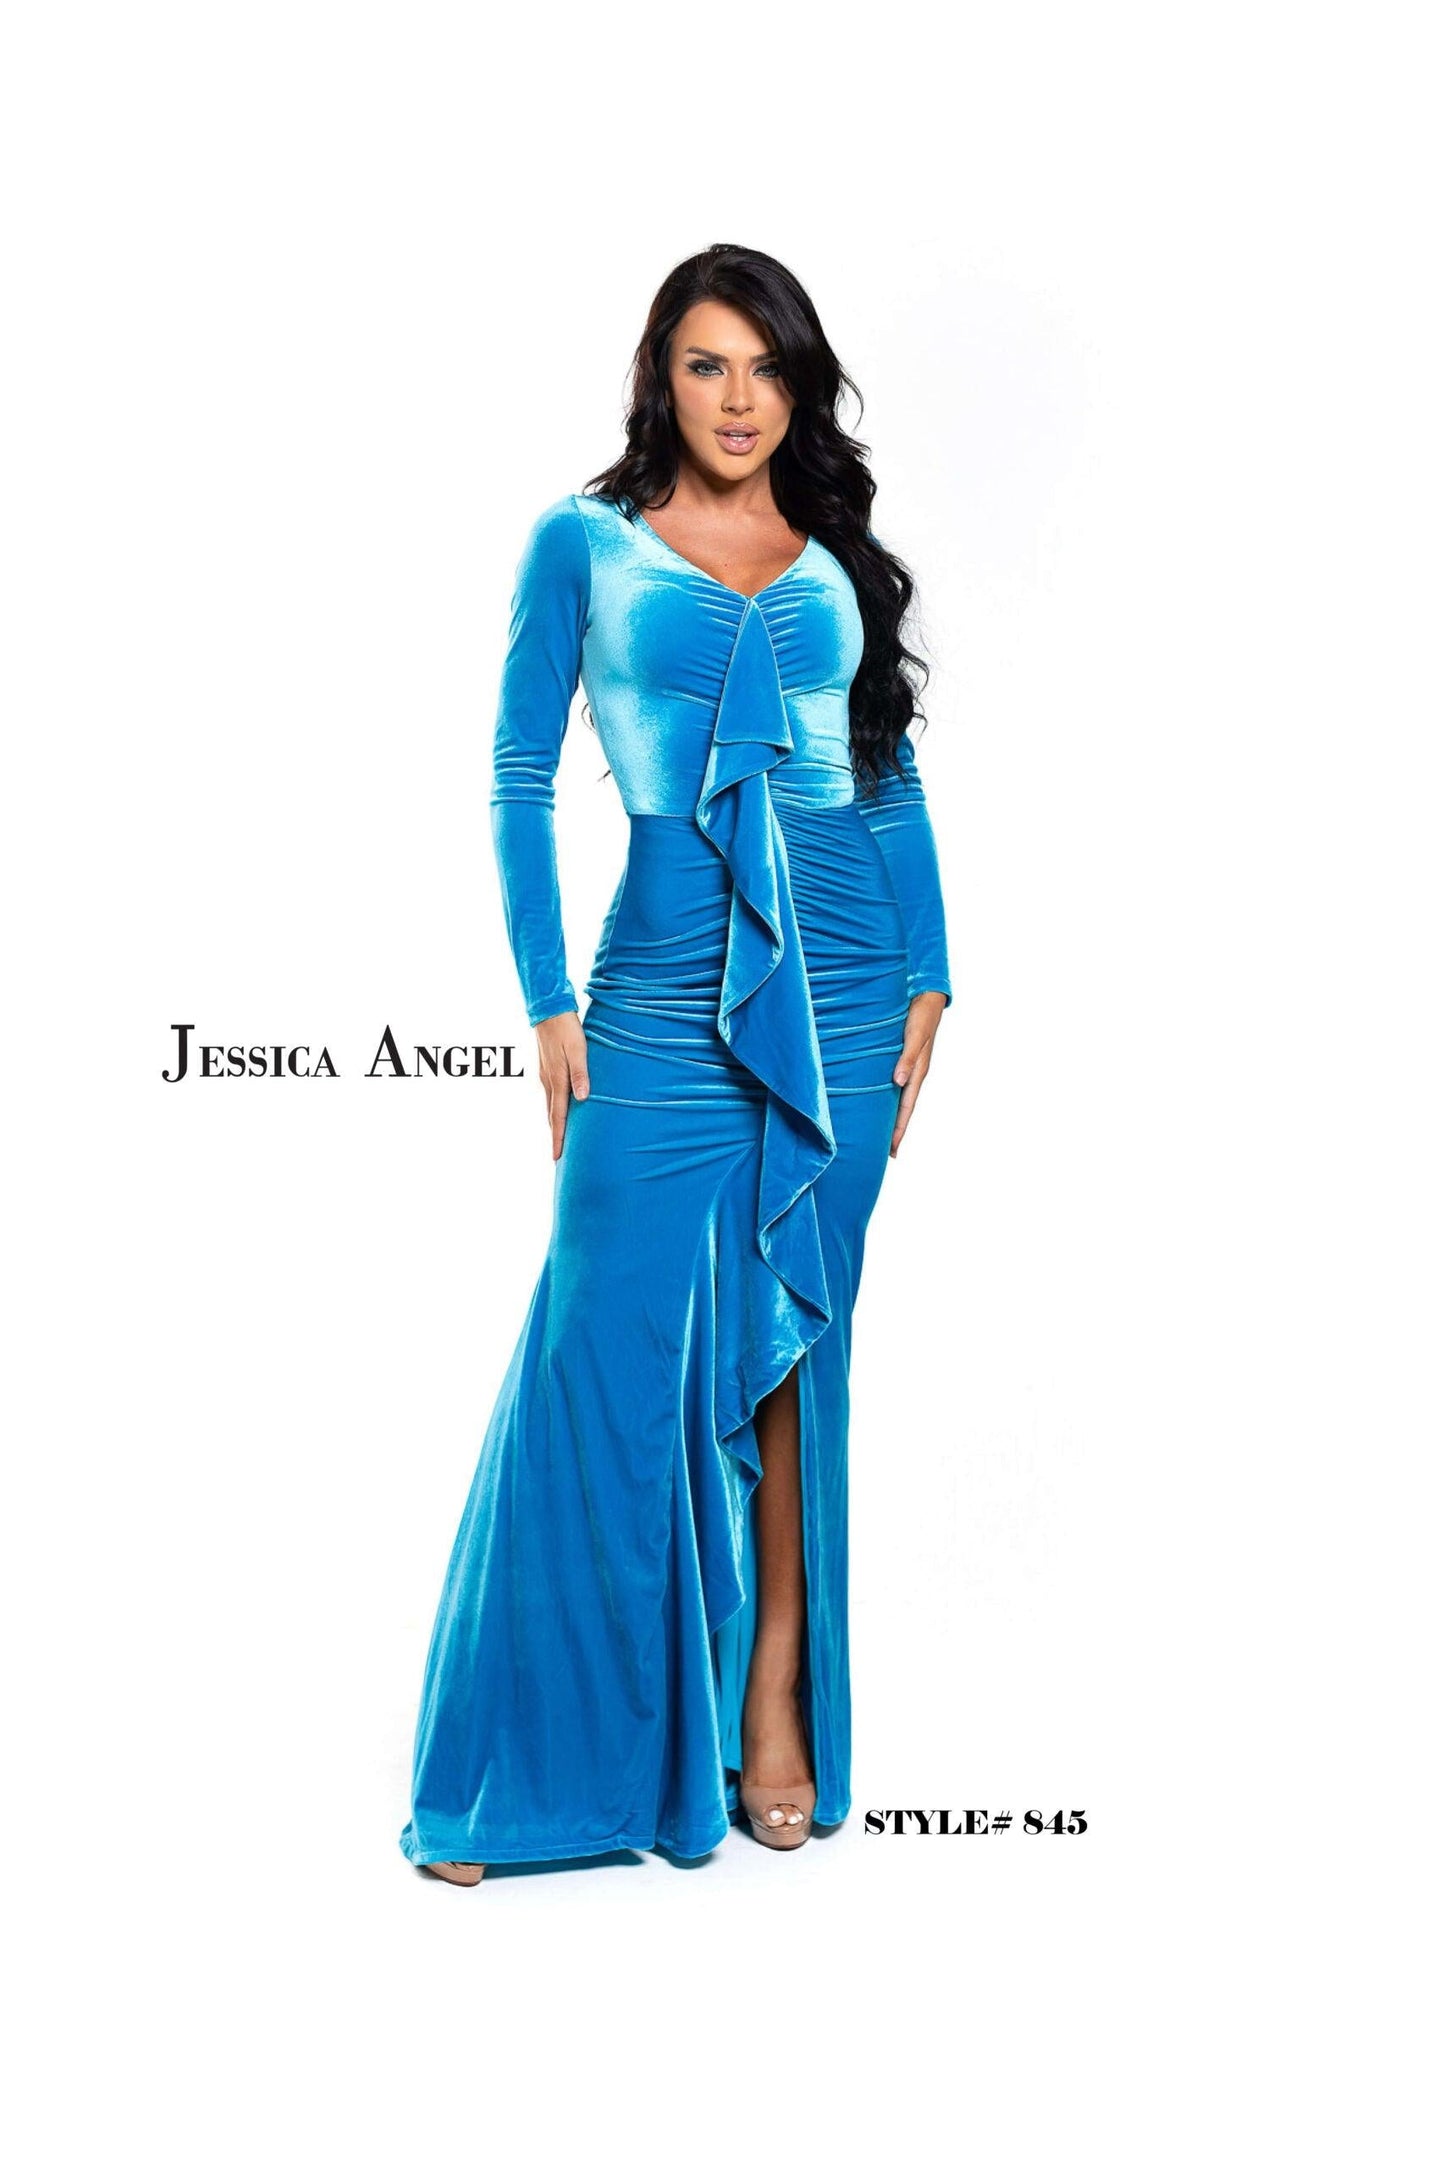 Jessica Angel Long Sleeveless Formal Velvet Gown 845 - The Dress Outlet